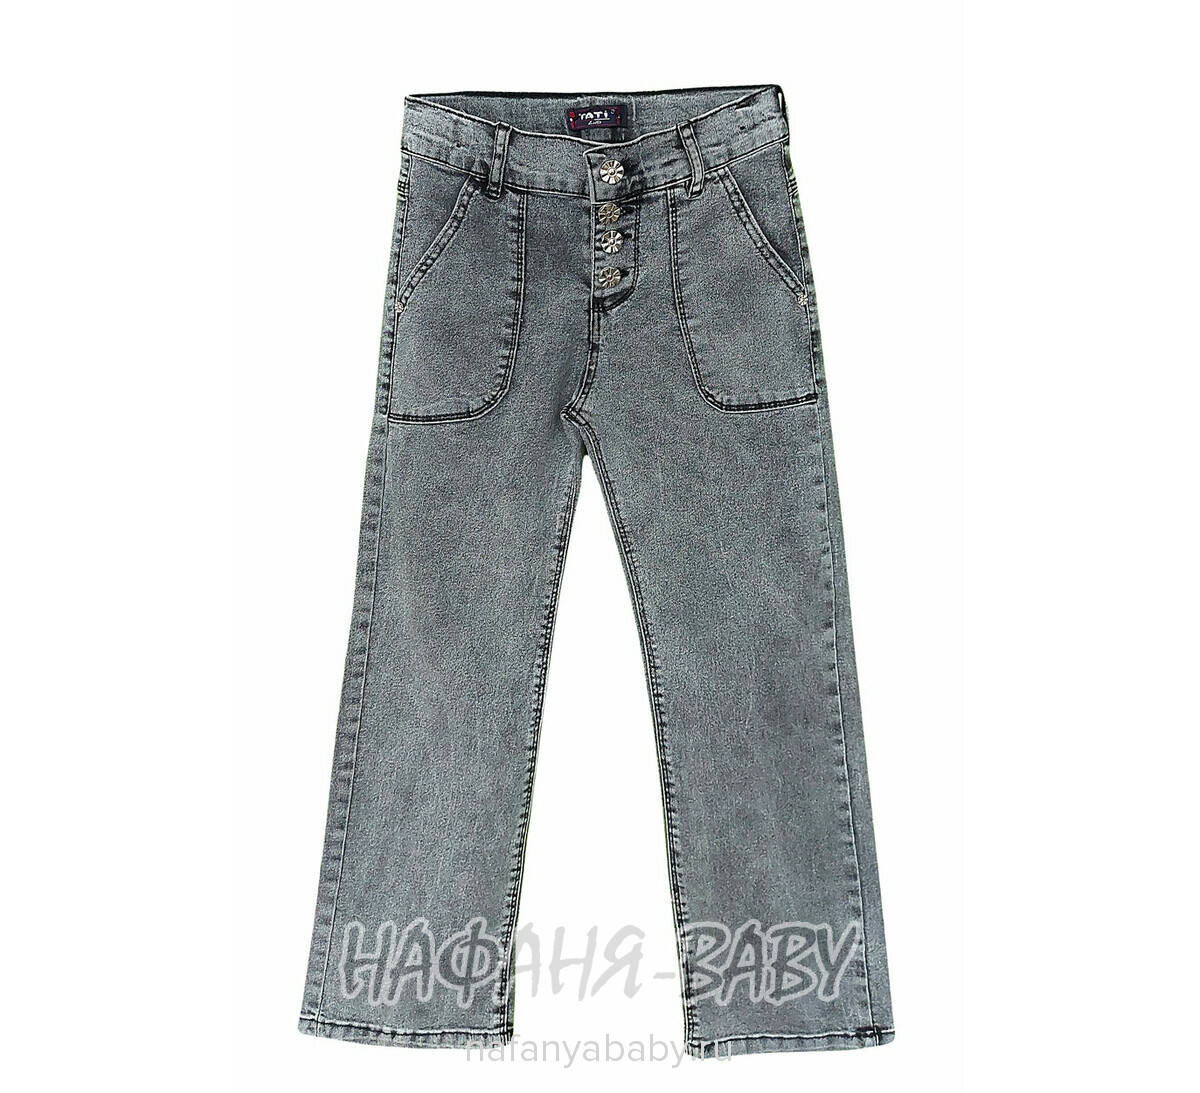 Джинсы подростковые TATI Jeans арт: 1020 для девочки от 8 до 12 лет, цвет черный, оптом Турция